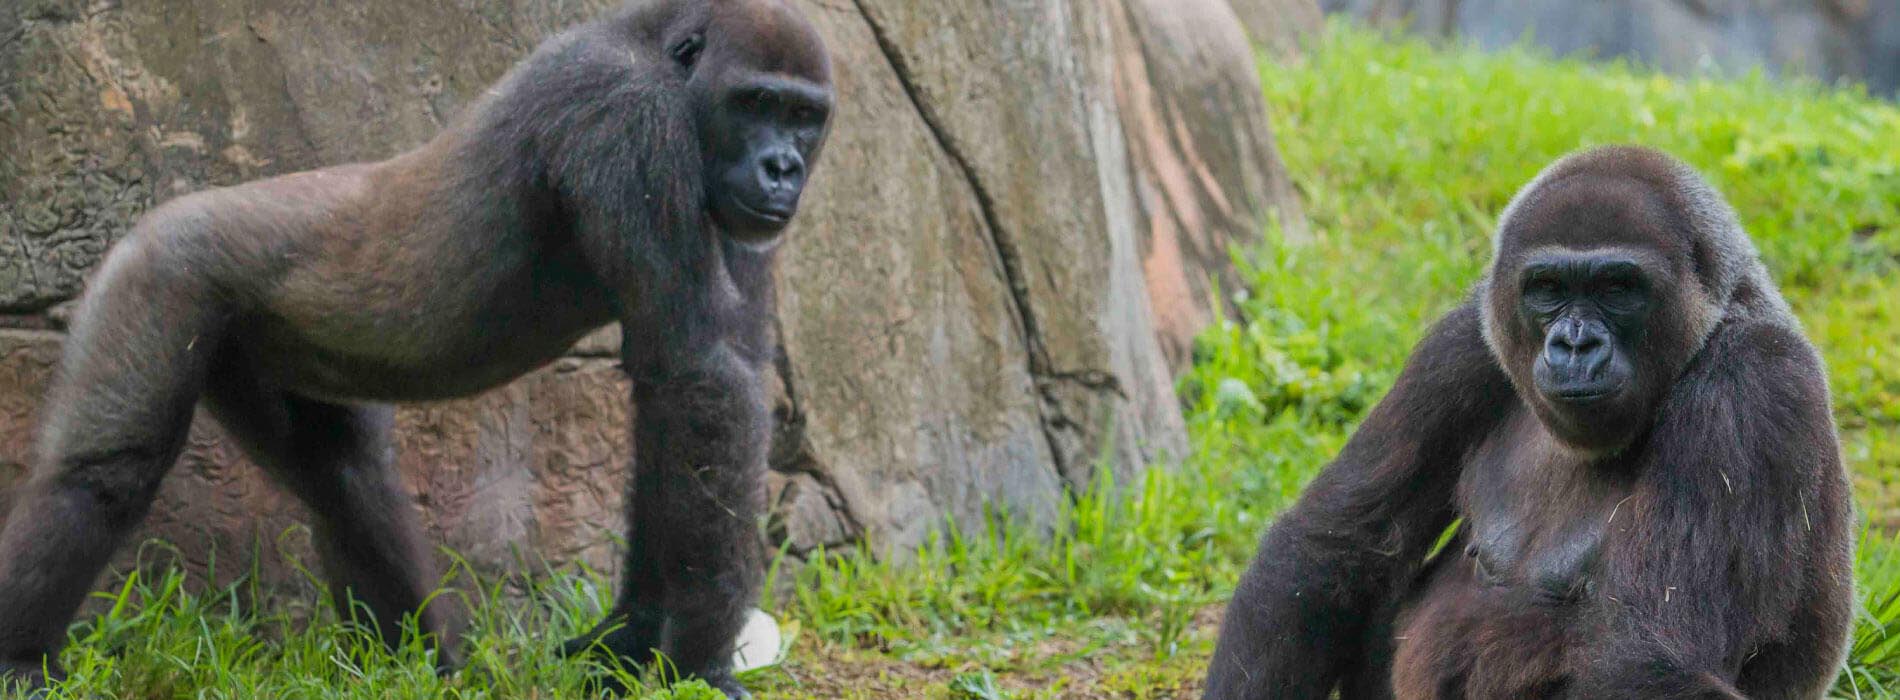 Two onlooking gorillas